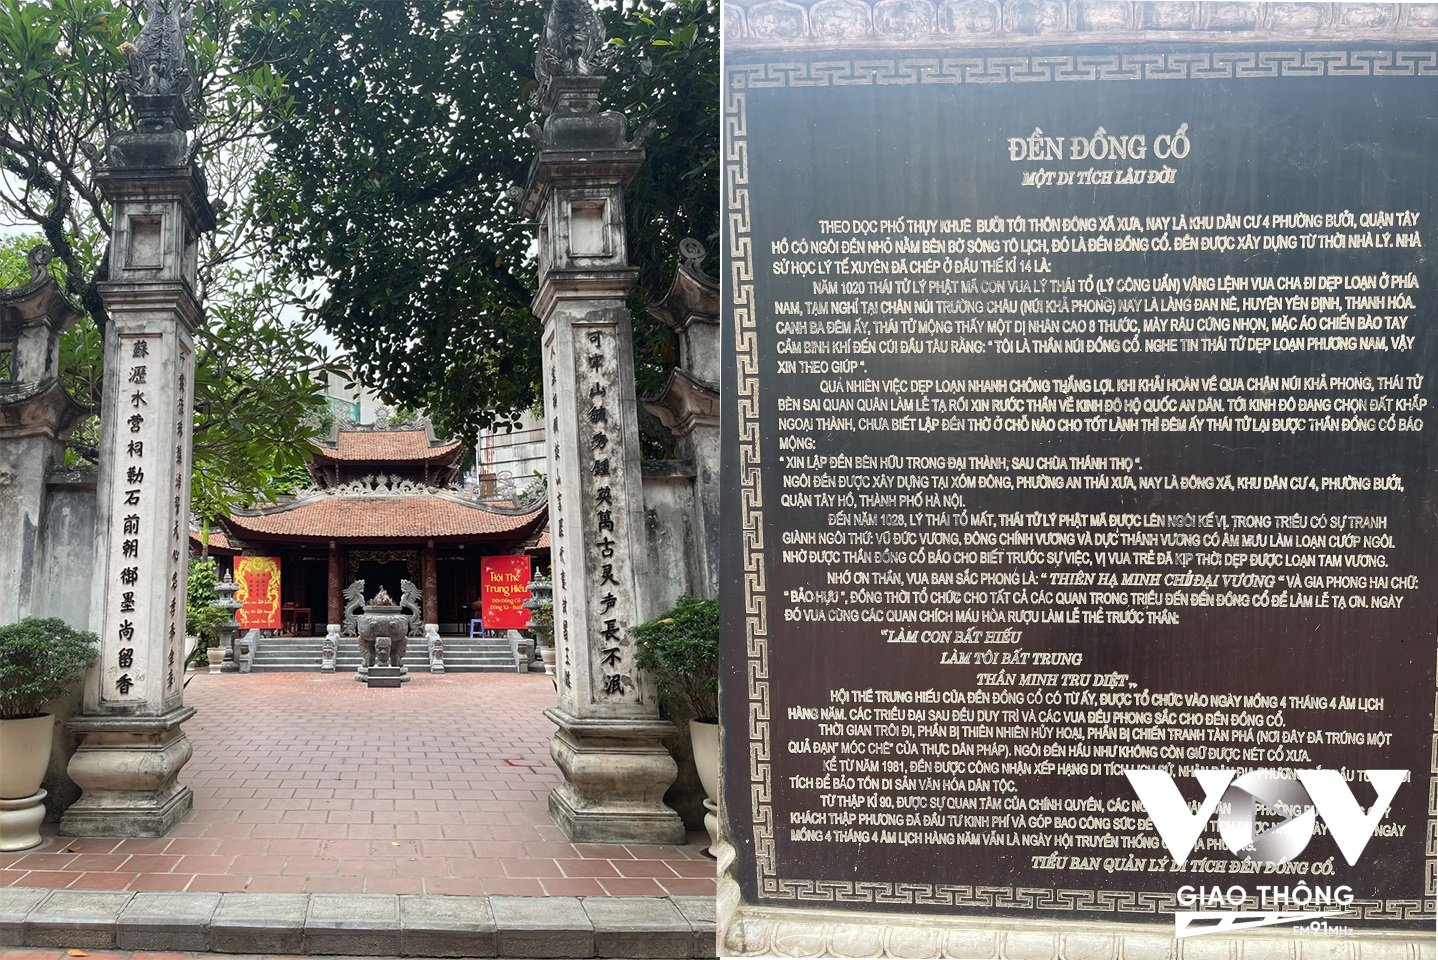 Đền Đồng Cổ, thuộc làng Đan Nê, xã Yên Thọ, huyện Yên Định, Thanh Hóa